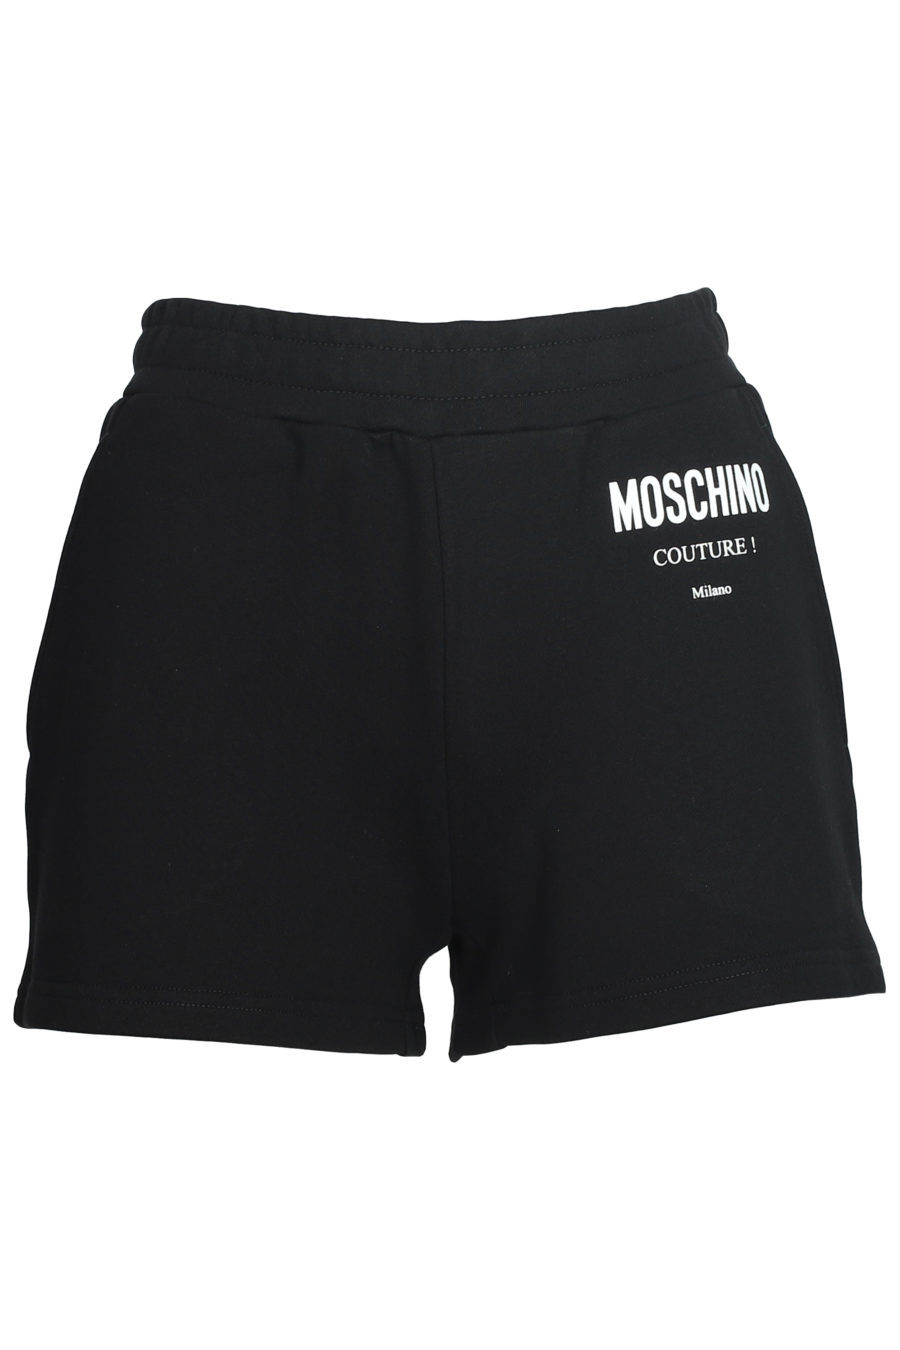 Black shorts with logo - IMG 5596